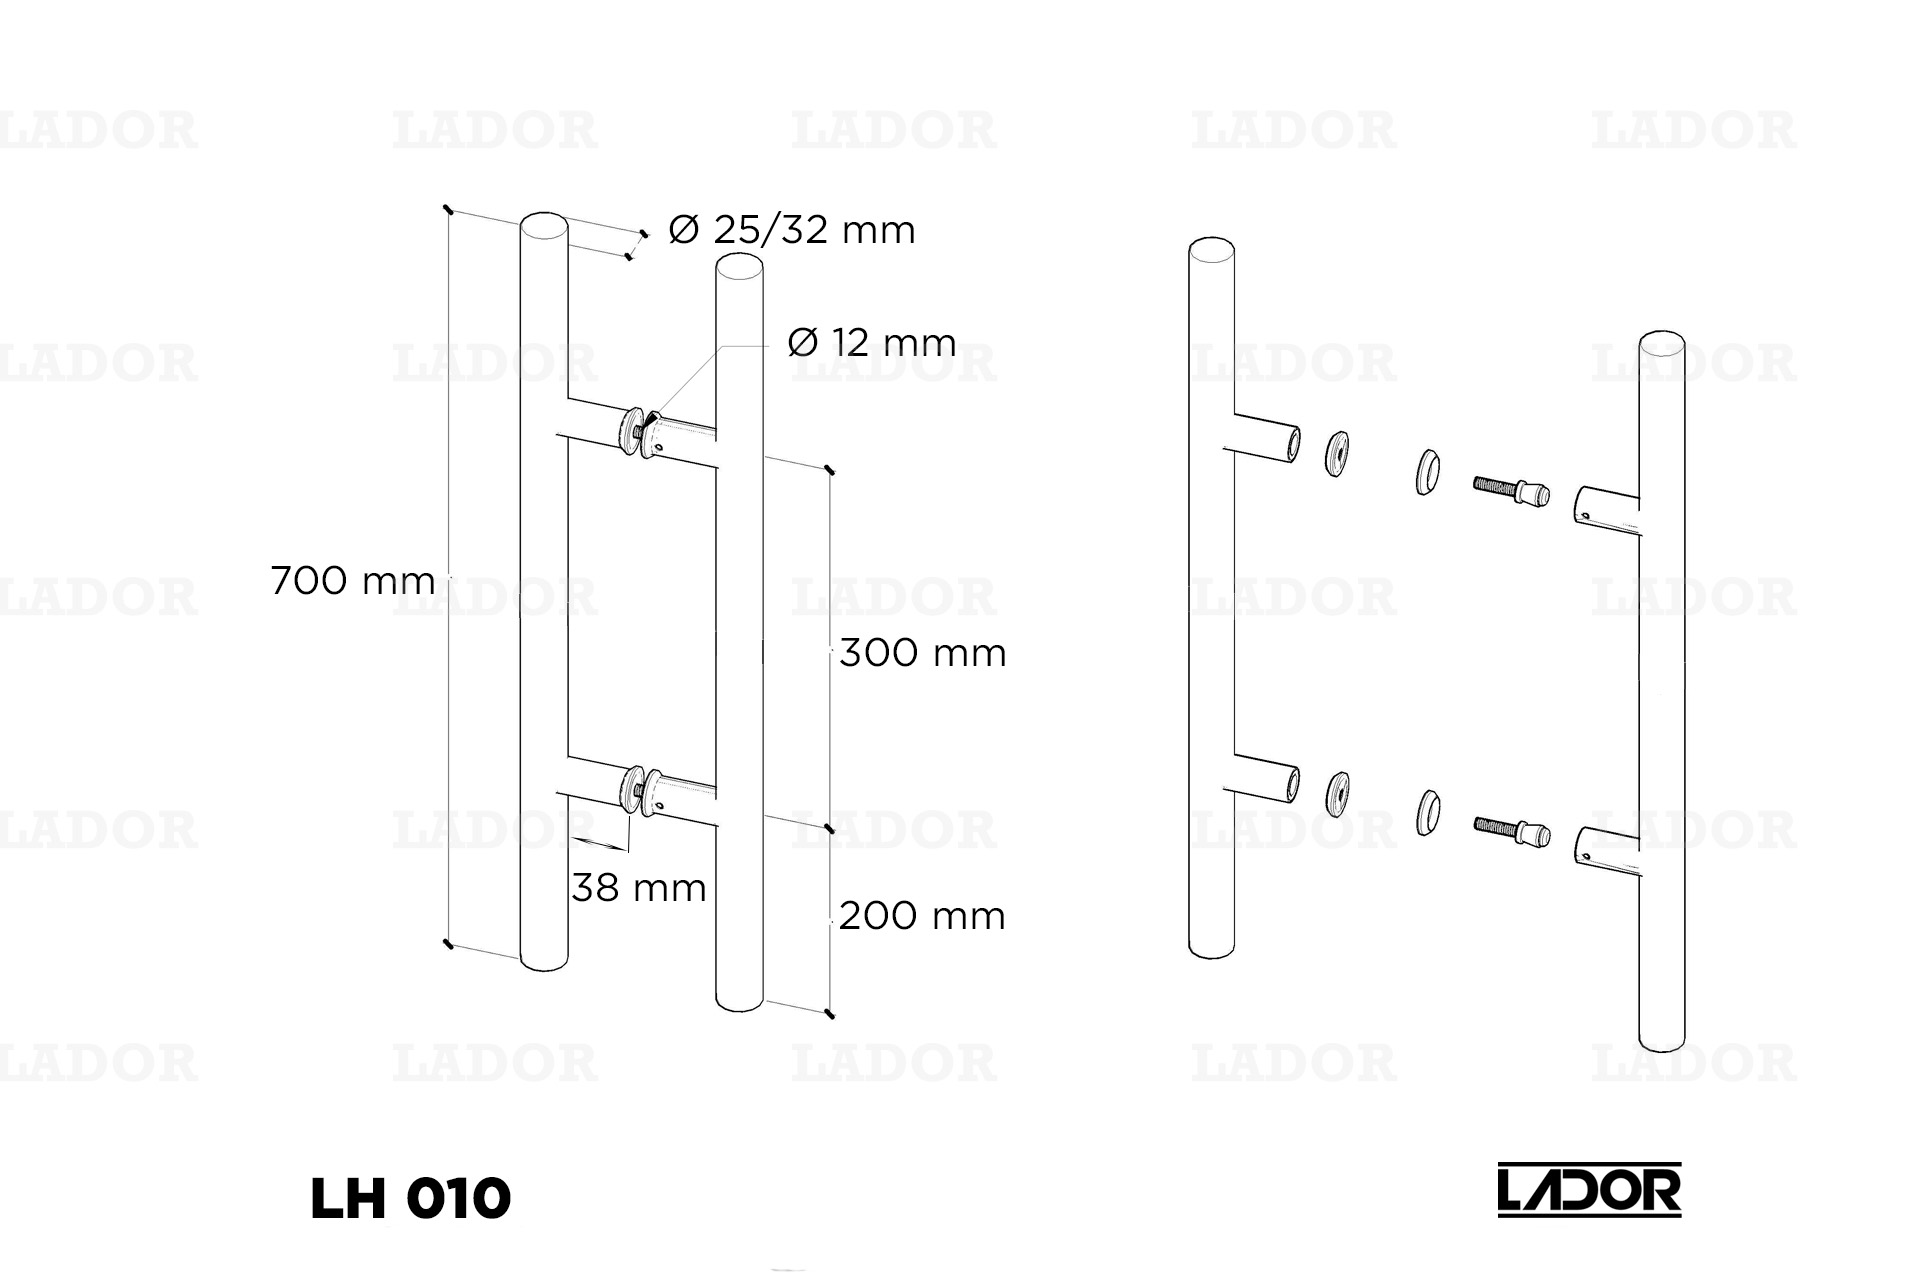 Glass door handle LADOR LH 010 (700 mm)